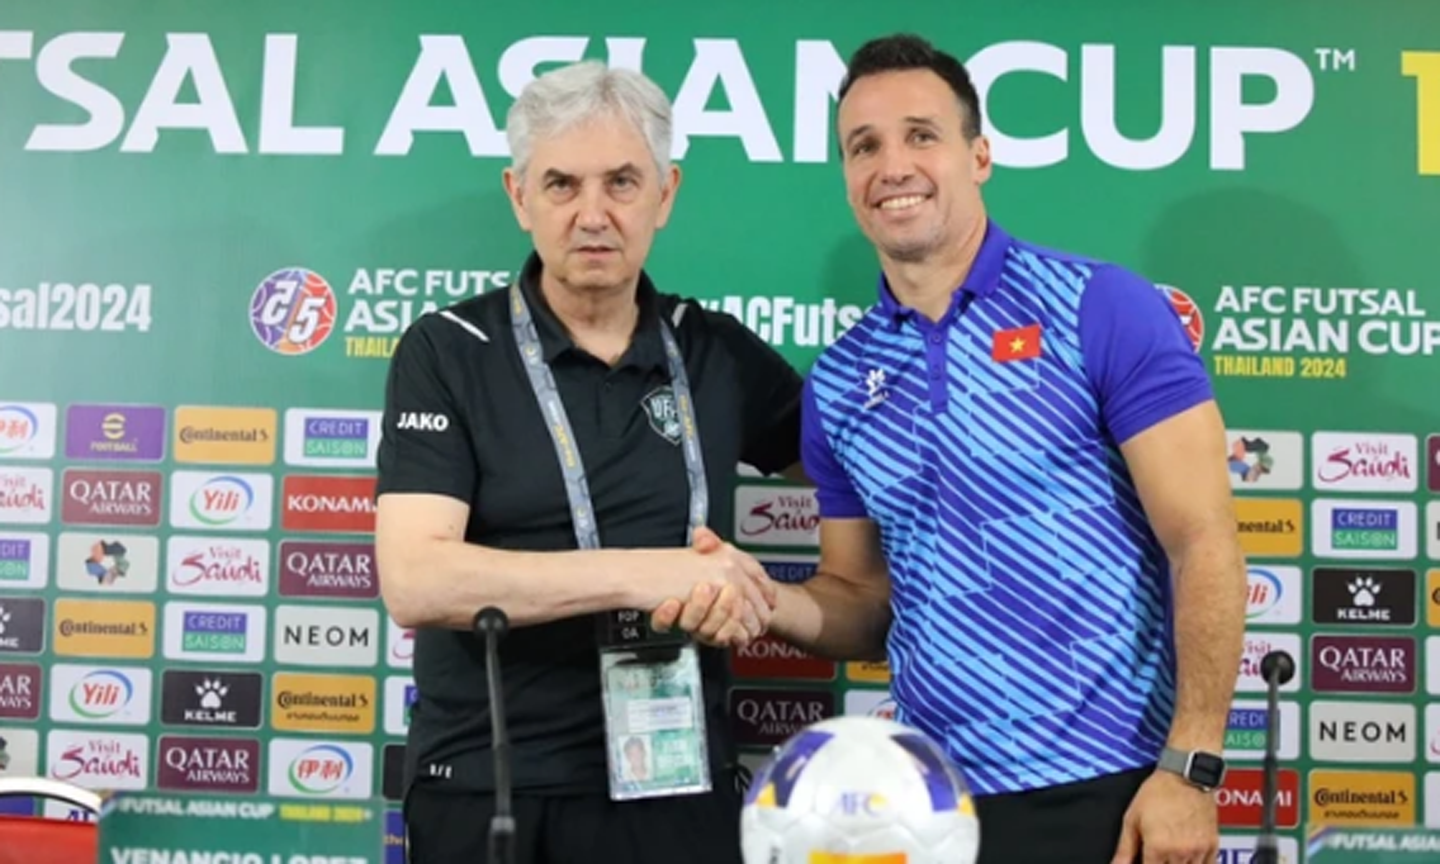 HLV Giustozzi: Futsal Việt Nam cần một trận đấu hoàn hảo nếu muốn đến World Cup